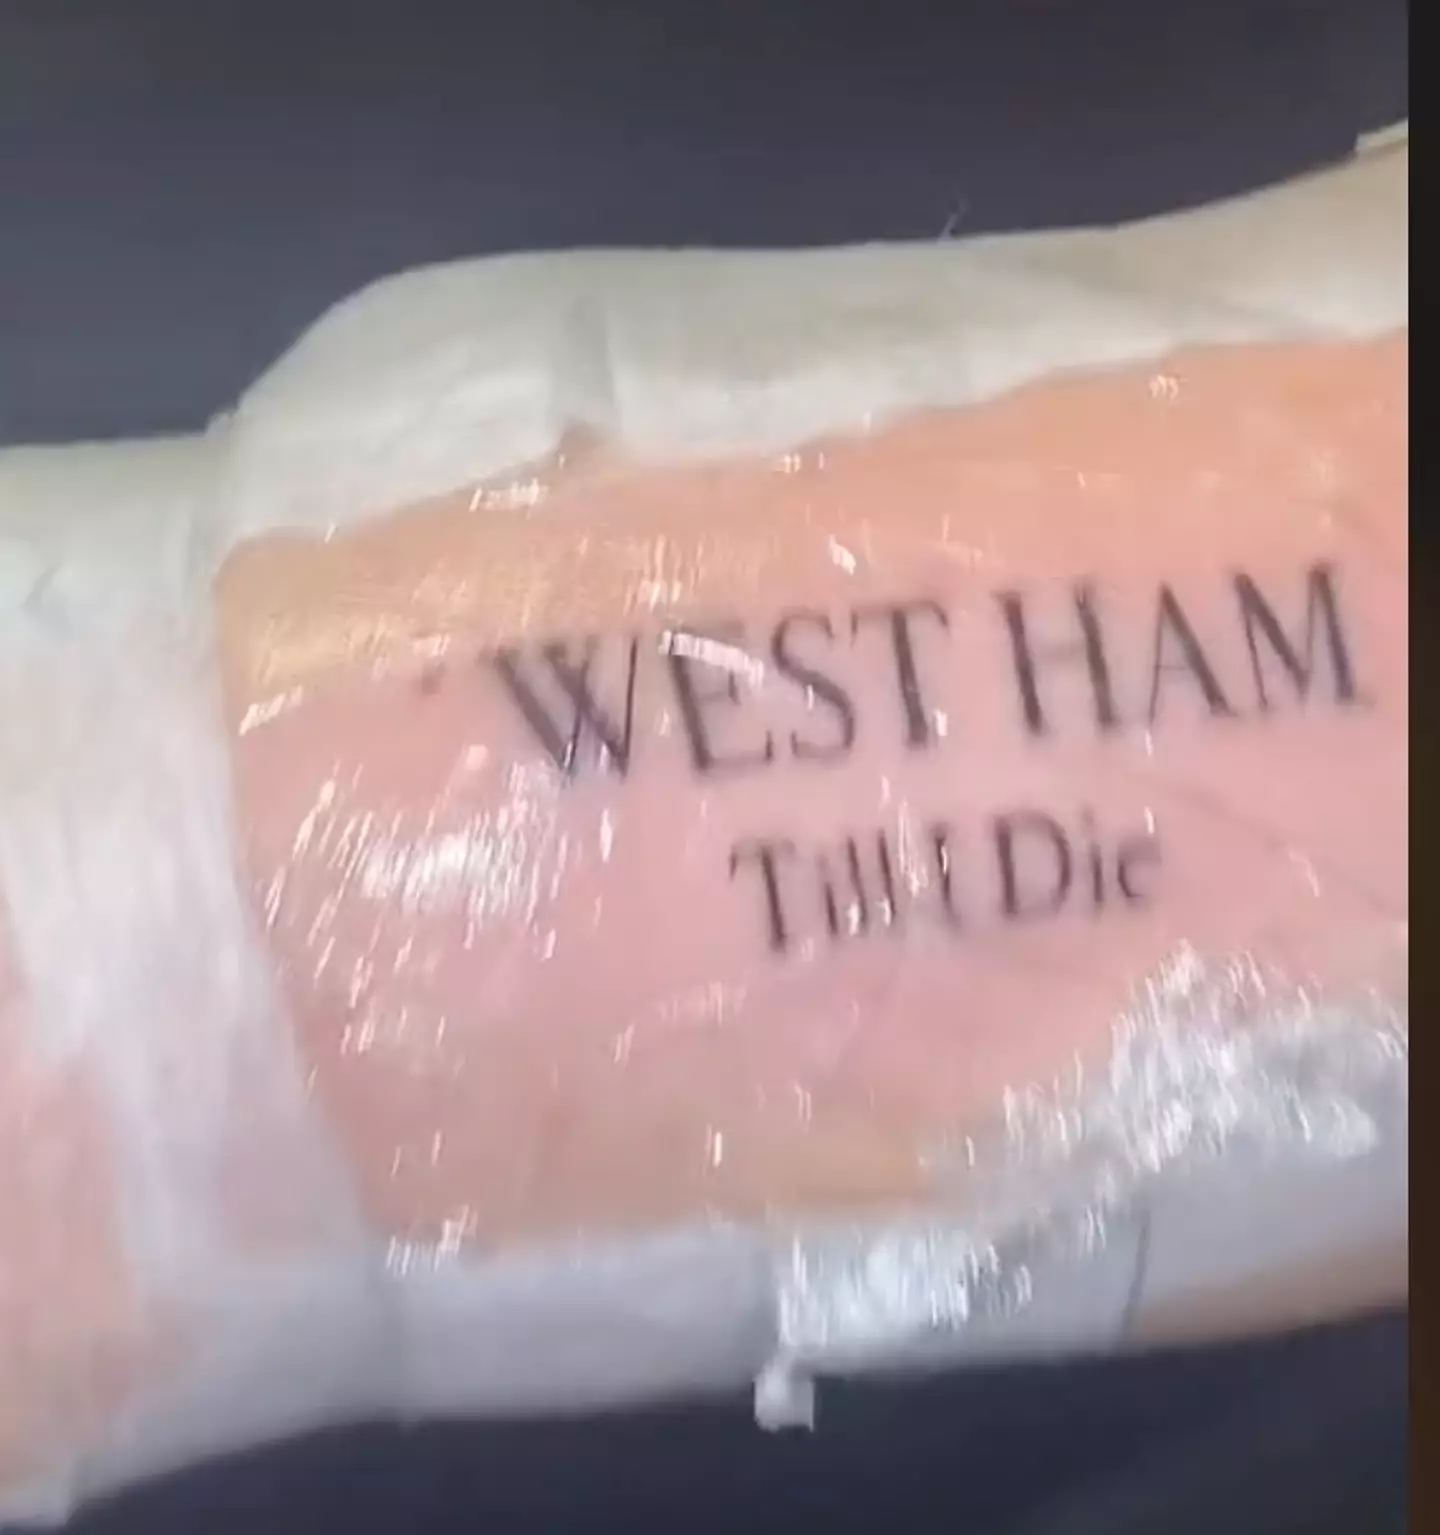 A devoted Westham fan.